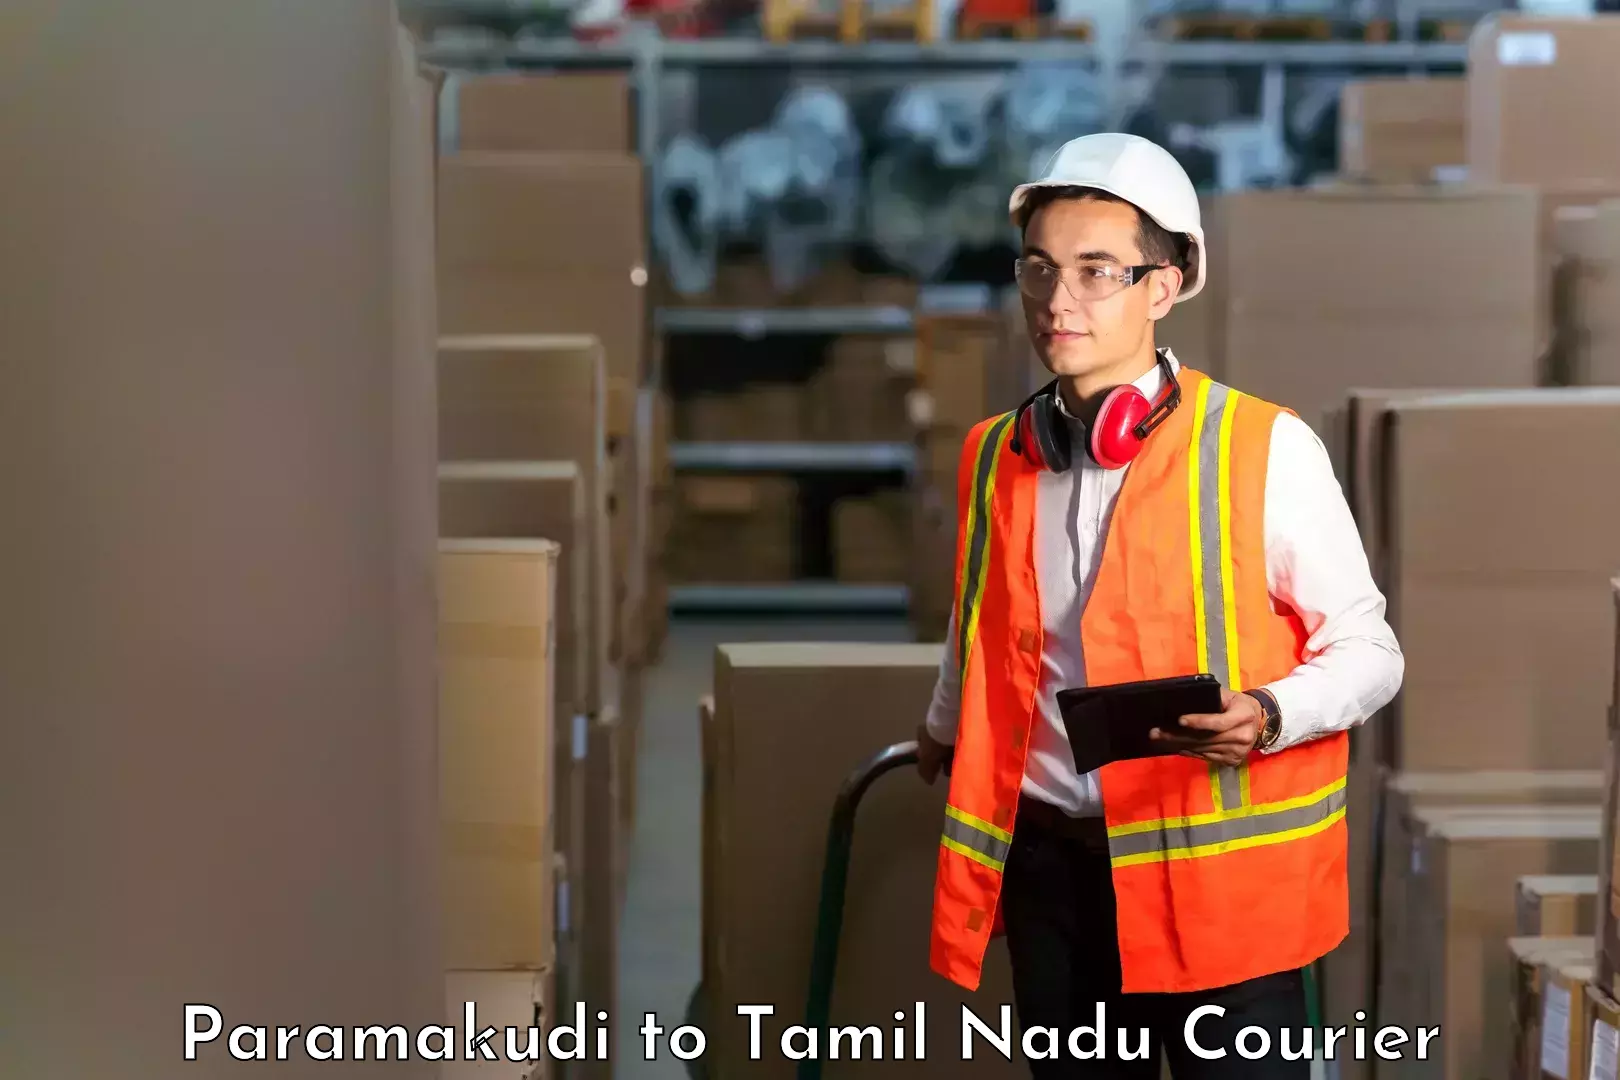 Logistics service provider Paramakudi to Tiruturaipundi